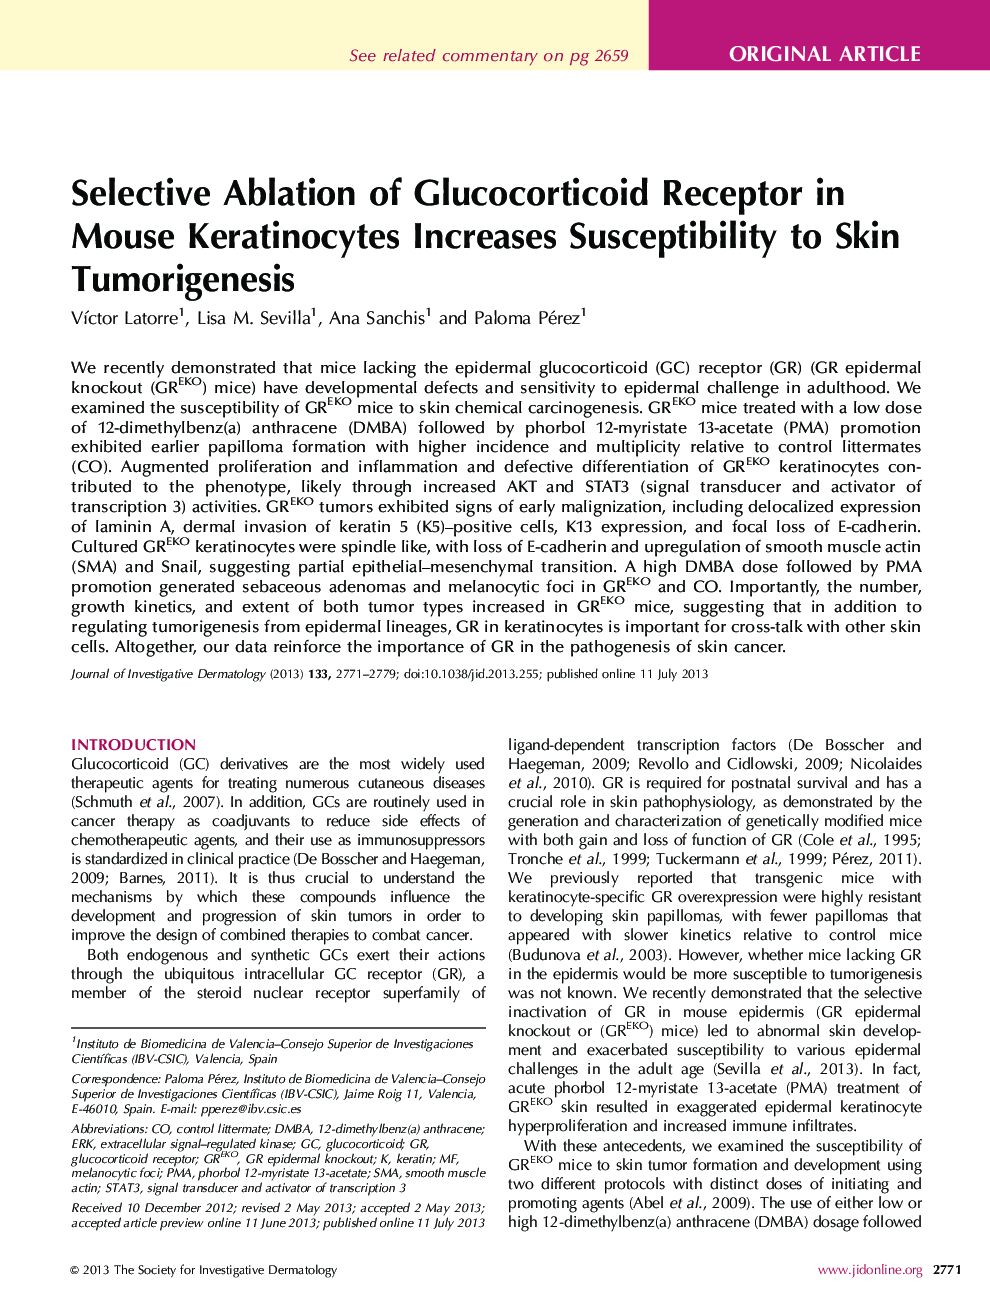 جداسازی ماده اصلی انتخاب گیرنده گلوکوکورتیکوئید در کراتینوسیت های موش باعث افزایش حساسیت به توموری زایی پوست می شود 